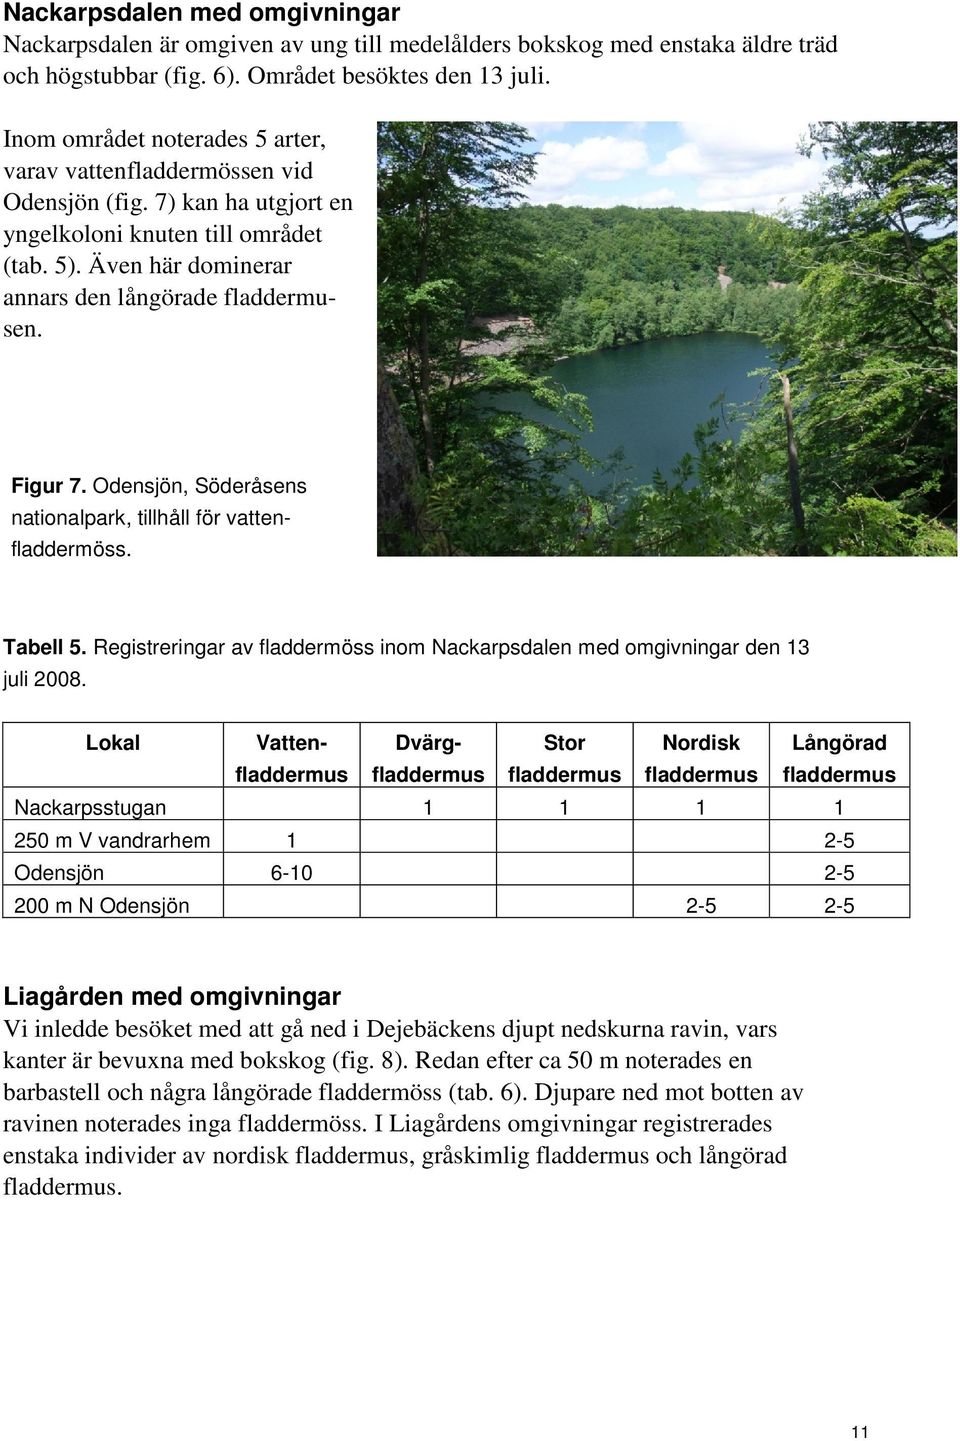 Odensjön, Söderåsens nationalpark, tillhåll för vattenfladdermöss. Tabell 5. Registreringar av fladdermöss inom Nackarpsdalen med omgivningar den 13 juli 2008.